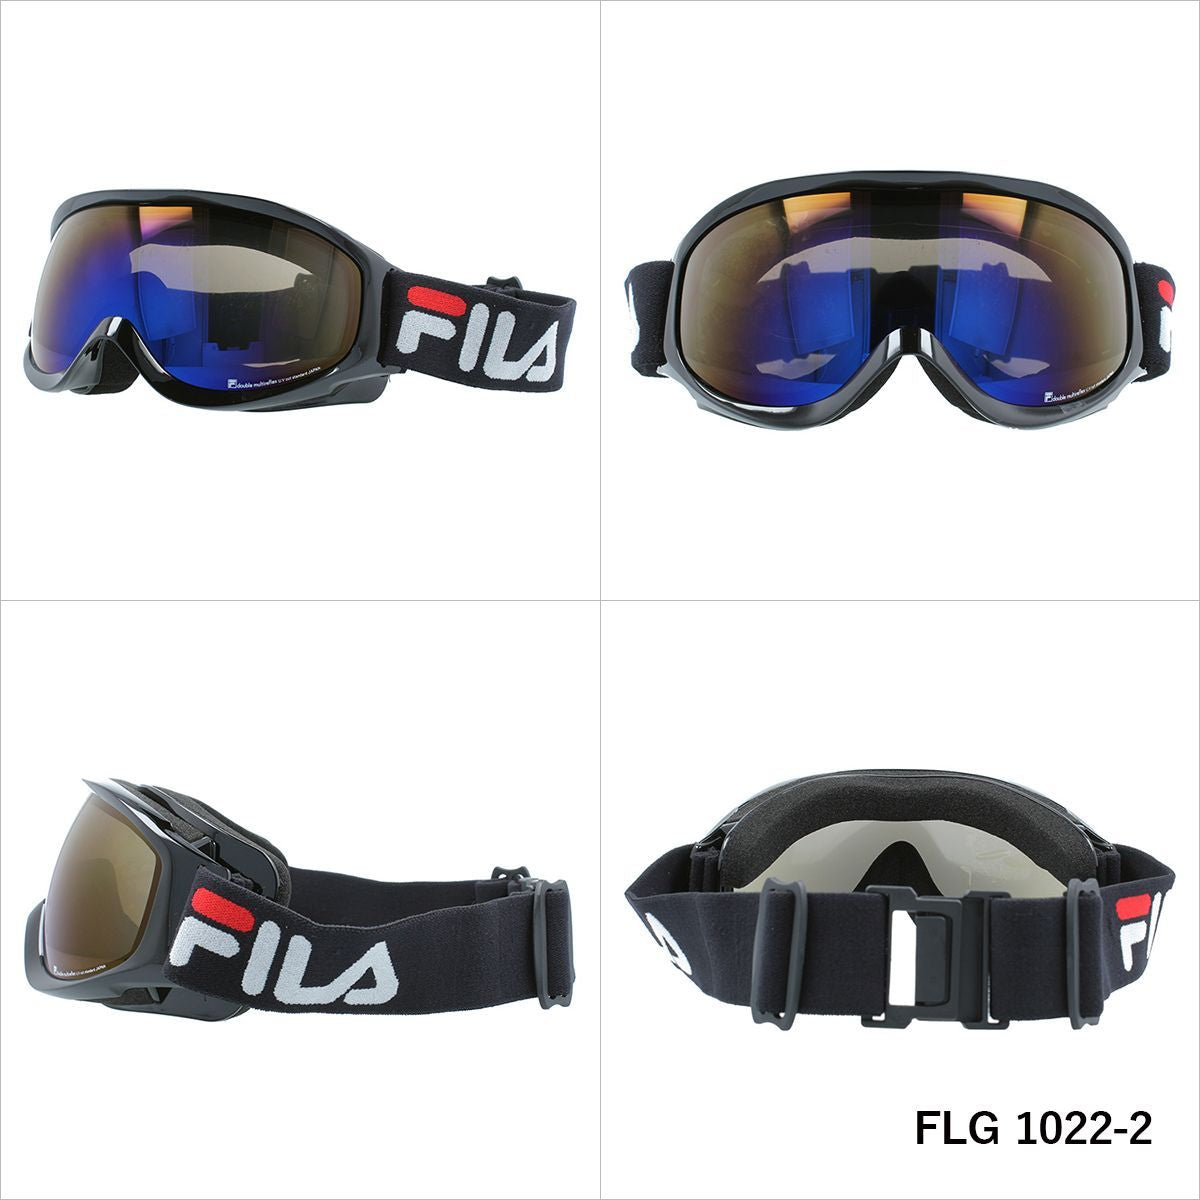 FILA フィラ FLG 1022 眼鏡対応 ミラーレンズ スノーゴーグル スキー スノーボード スノボ 球面ダブルレンズ フレームあり メンズ レディース ウィンタースポーツ 曇り防止 曇り止め 誕生日 プレゼント 男性 女性